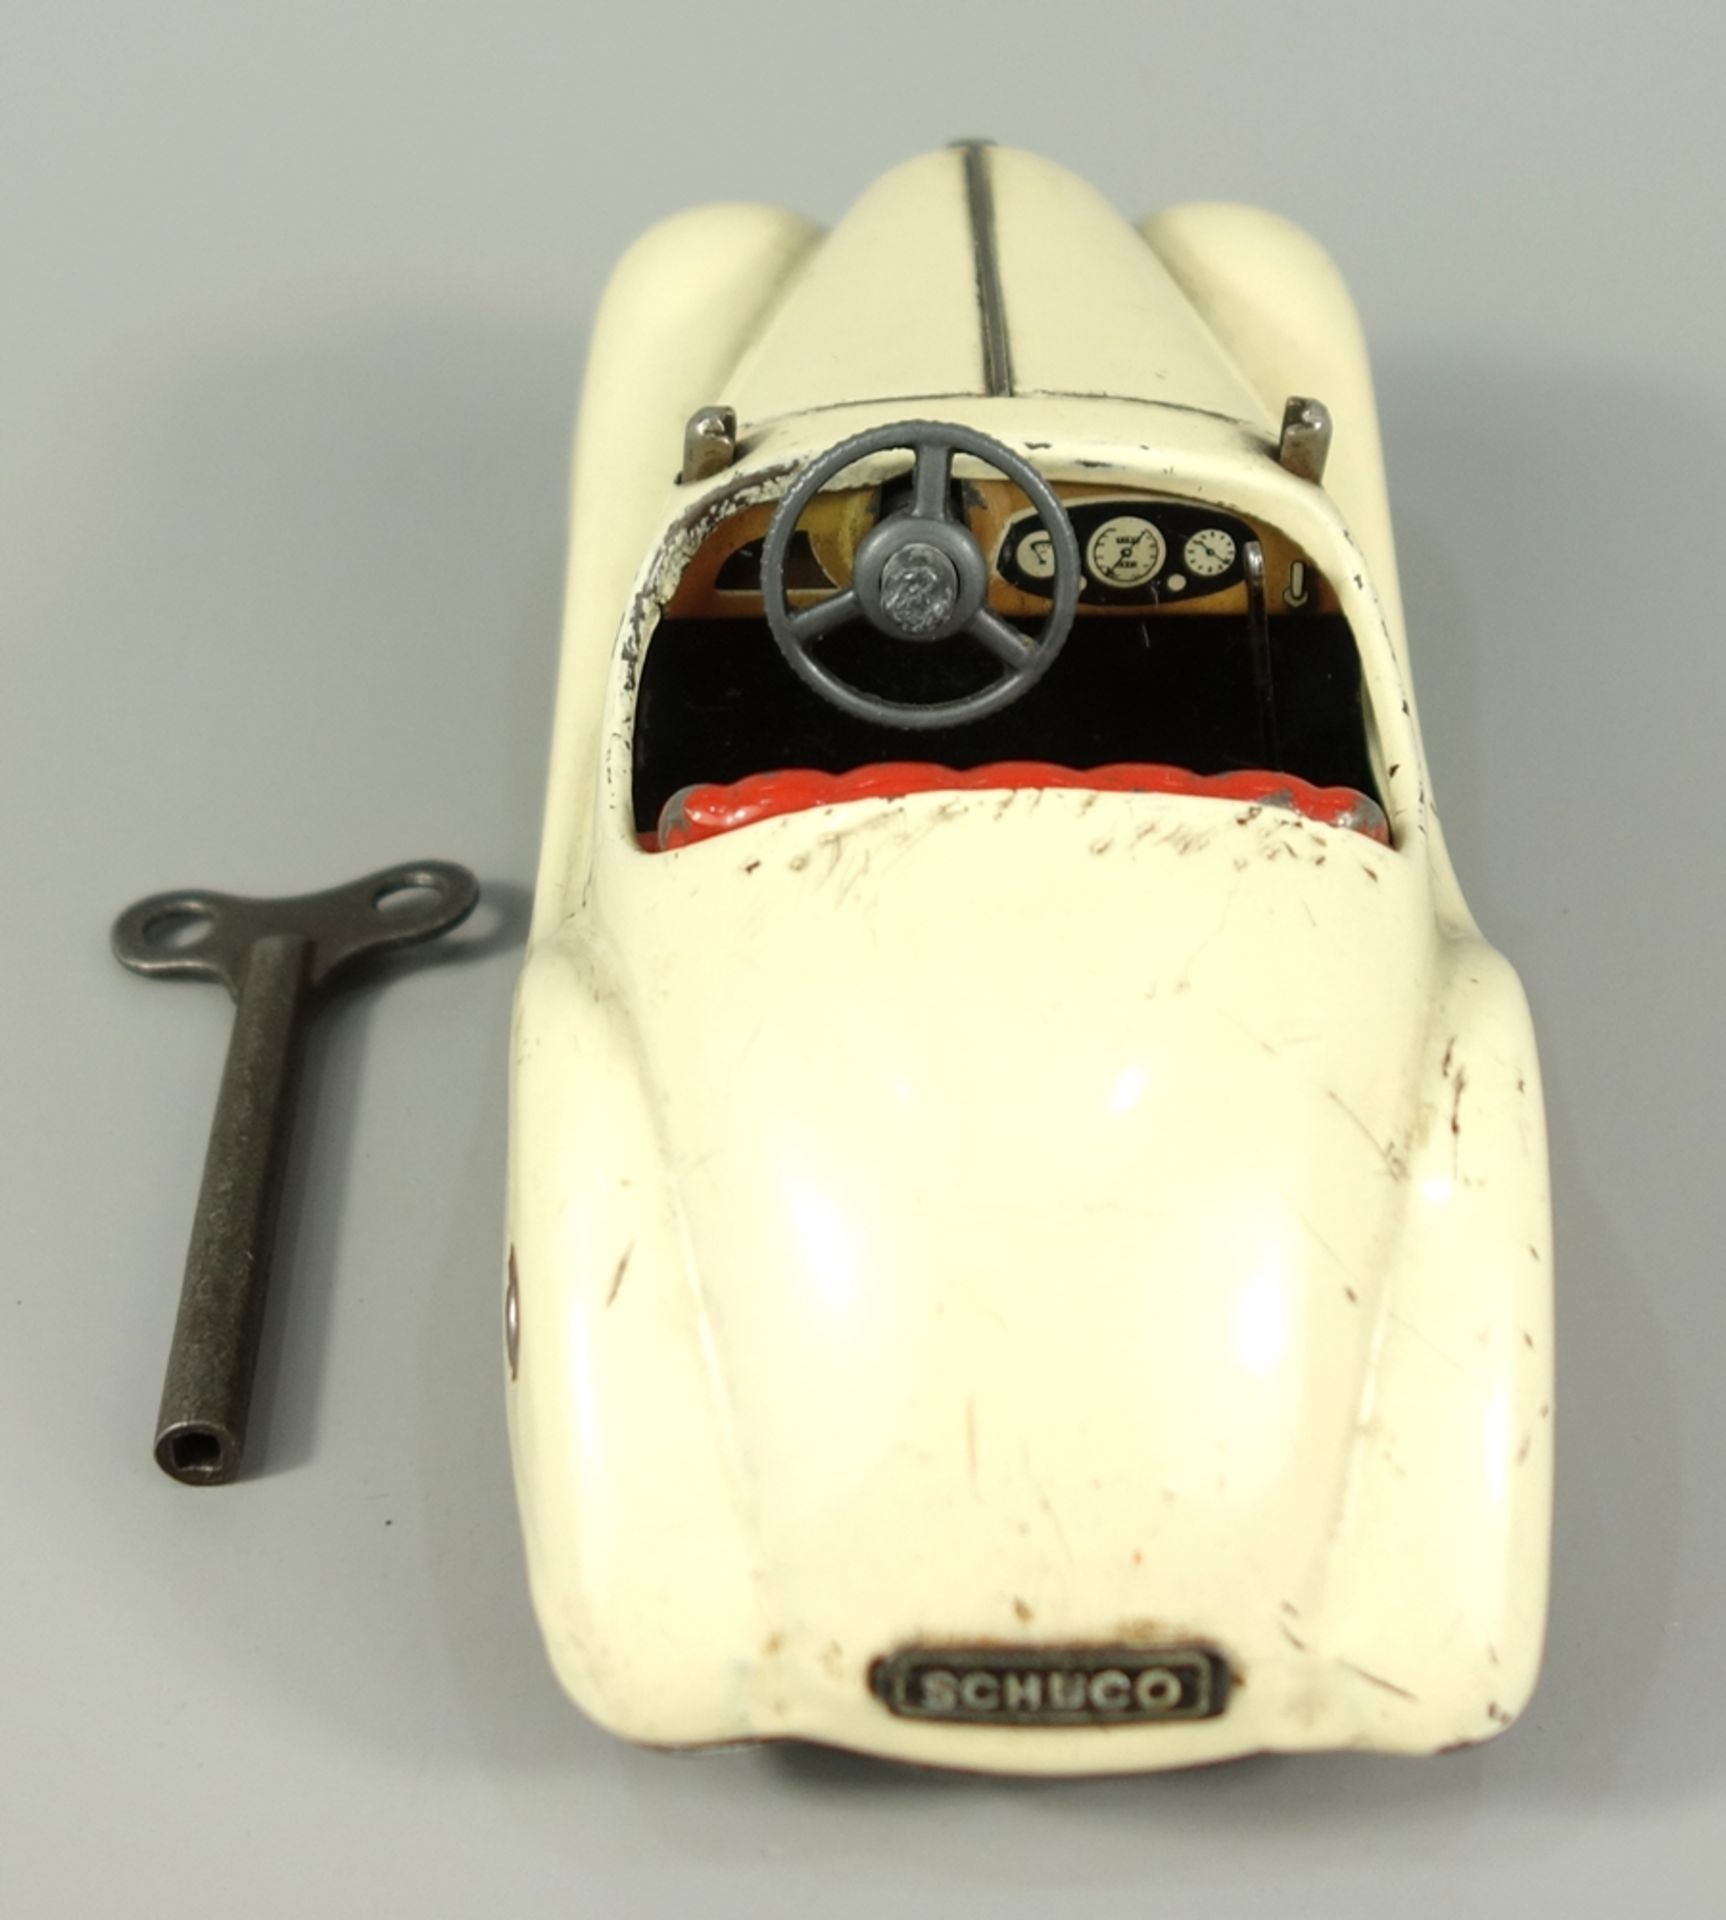 Schuco, Akustico 2002, Cabrio, 1950er Jahre, Blechspielzeug, handlackiert, cremeweiß, mit Uhrwerk, - Bild 2 aus 3